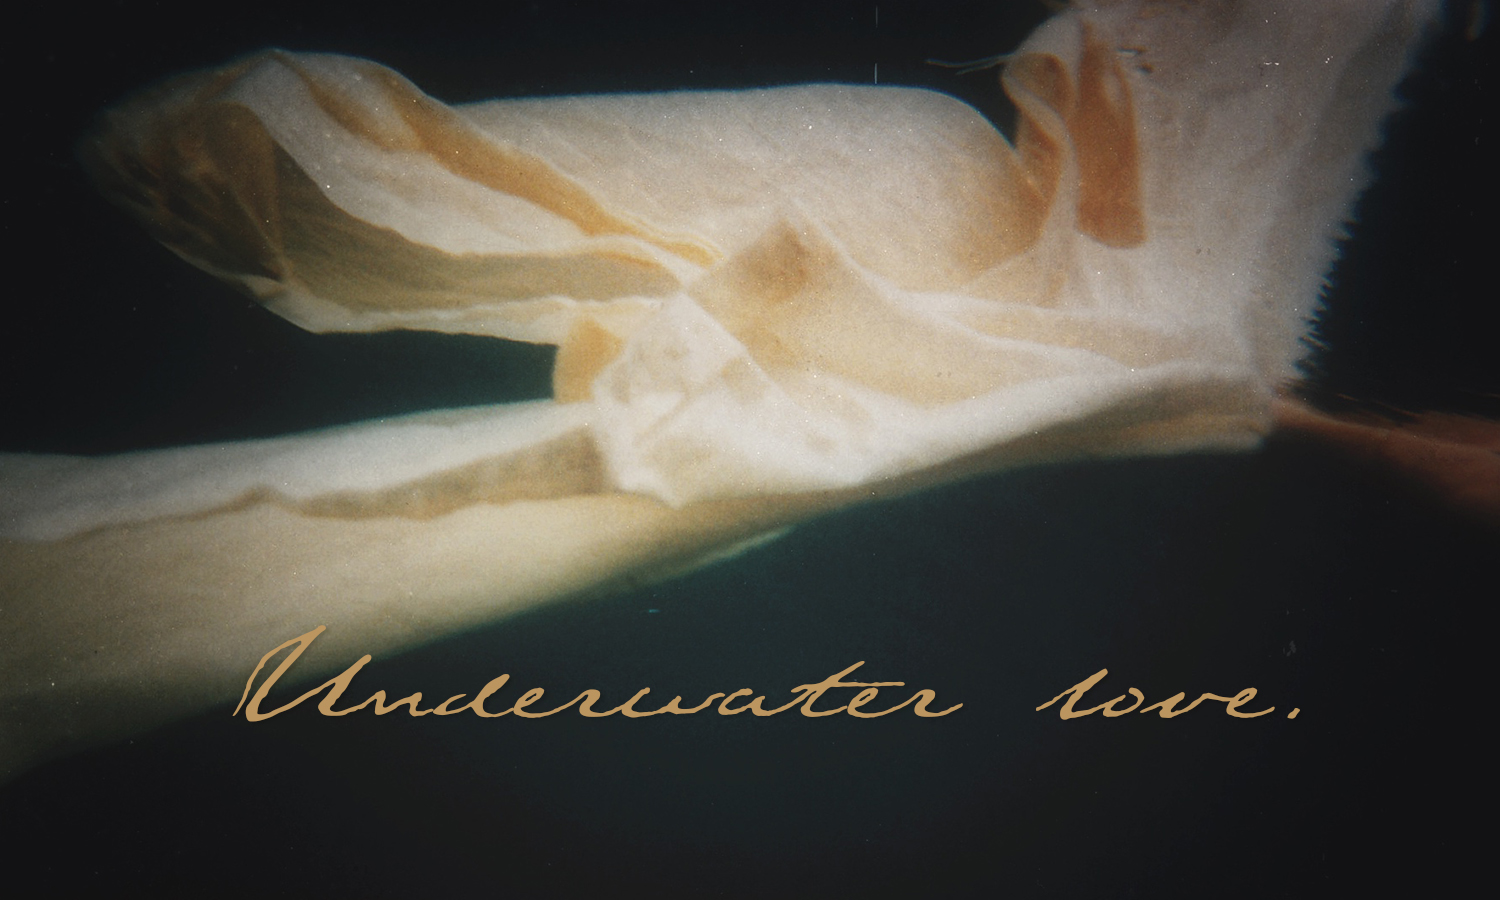 Underwater love.